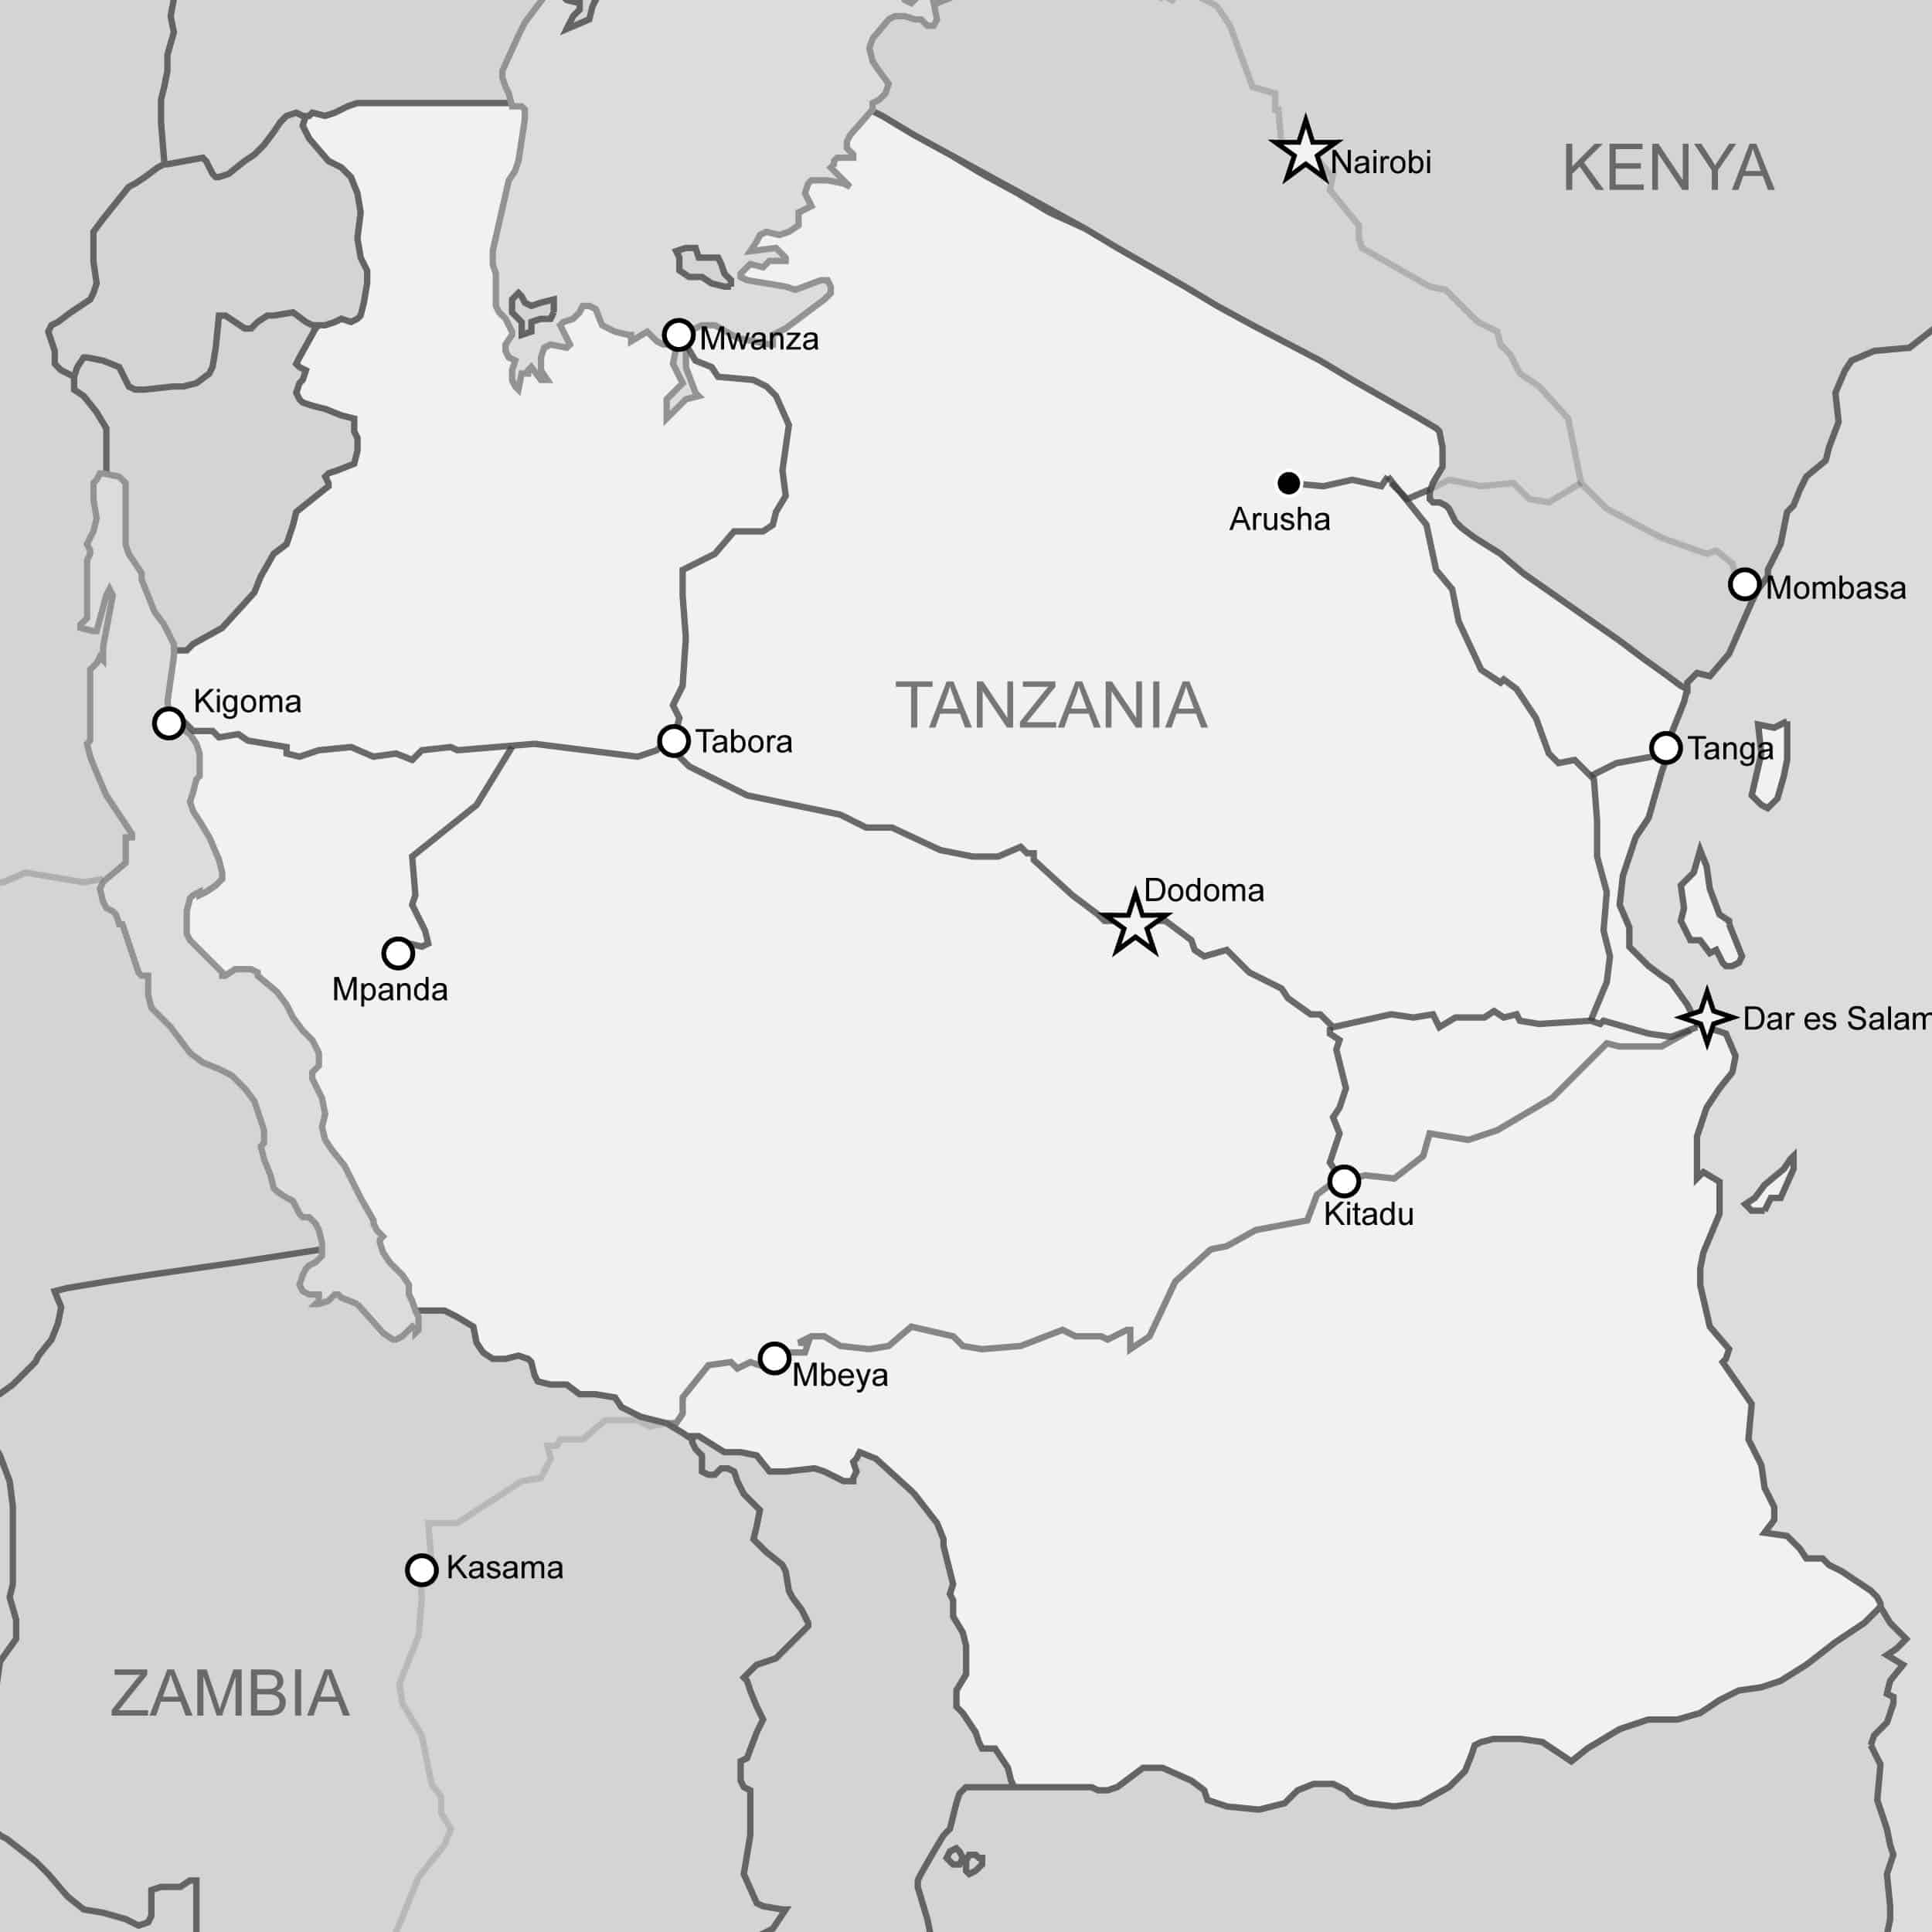 Railways in Tanzania